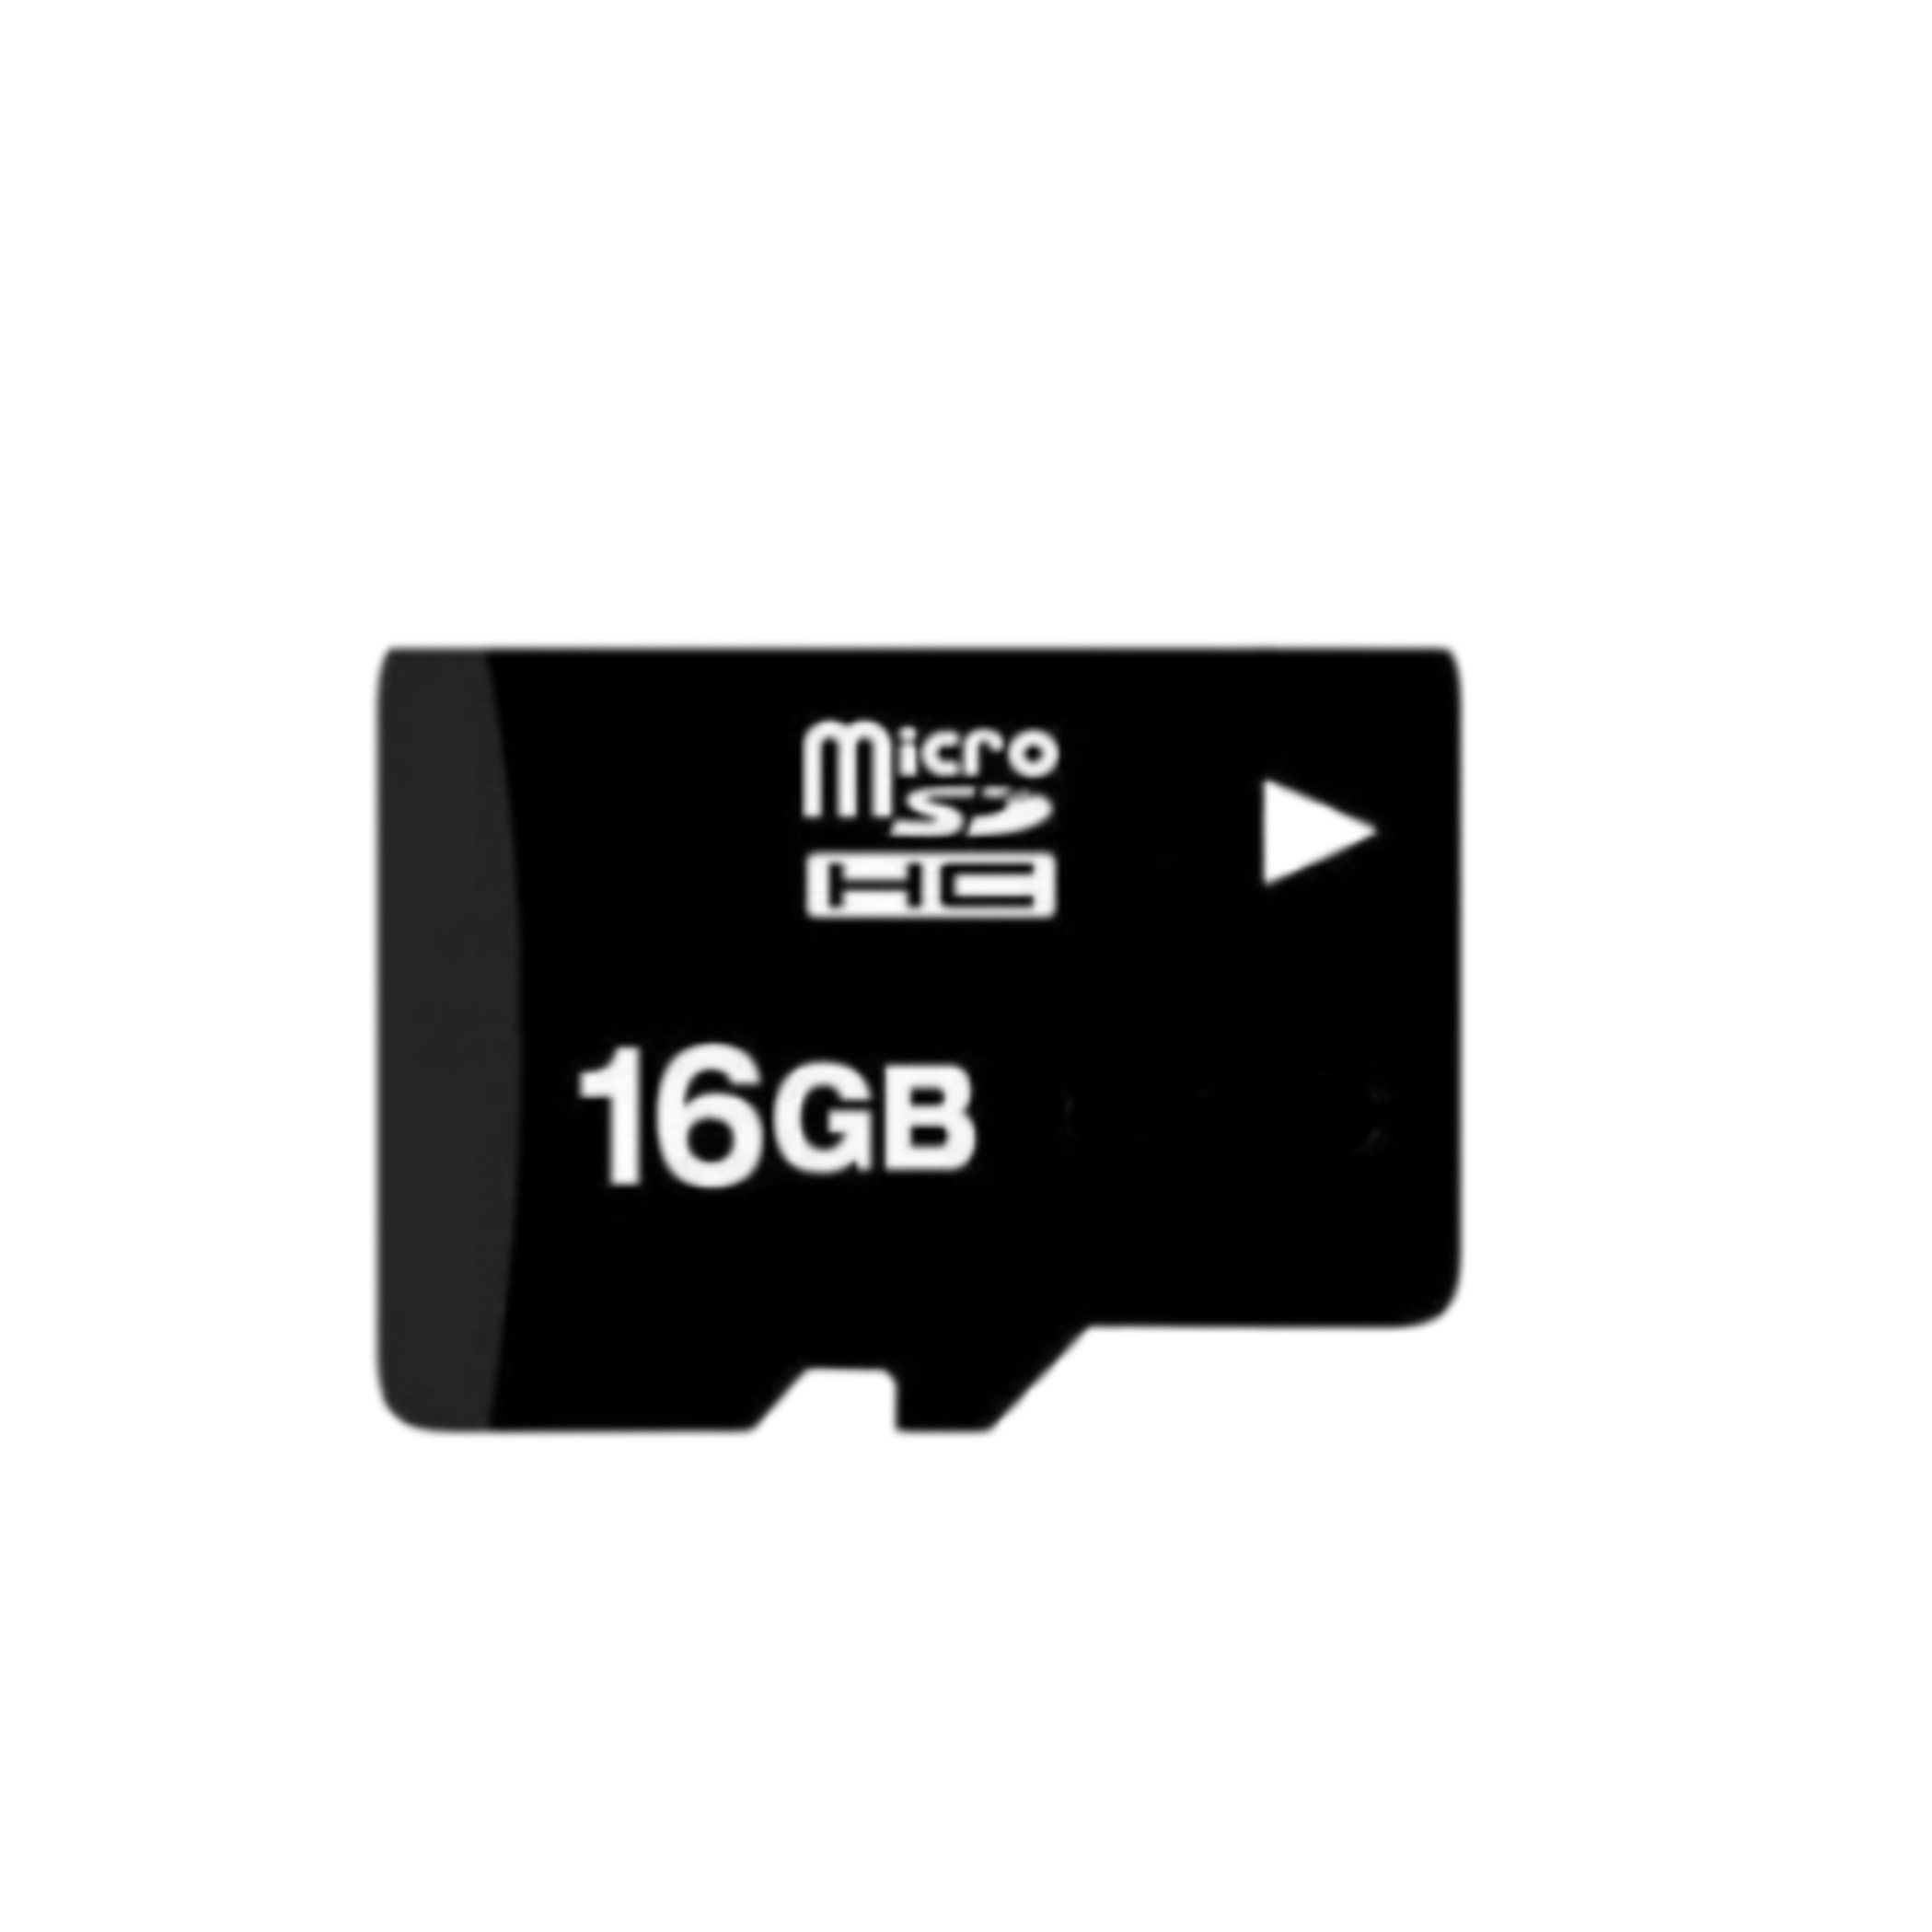  کارت حافظه microSDHC مدل Extreme کلاس 10 استاندارد UHS-I U1 سرعت 20MBps ظرفیت 16 گیگابایت